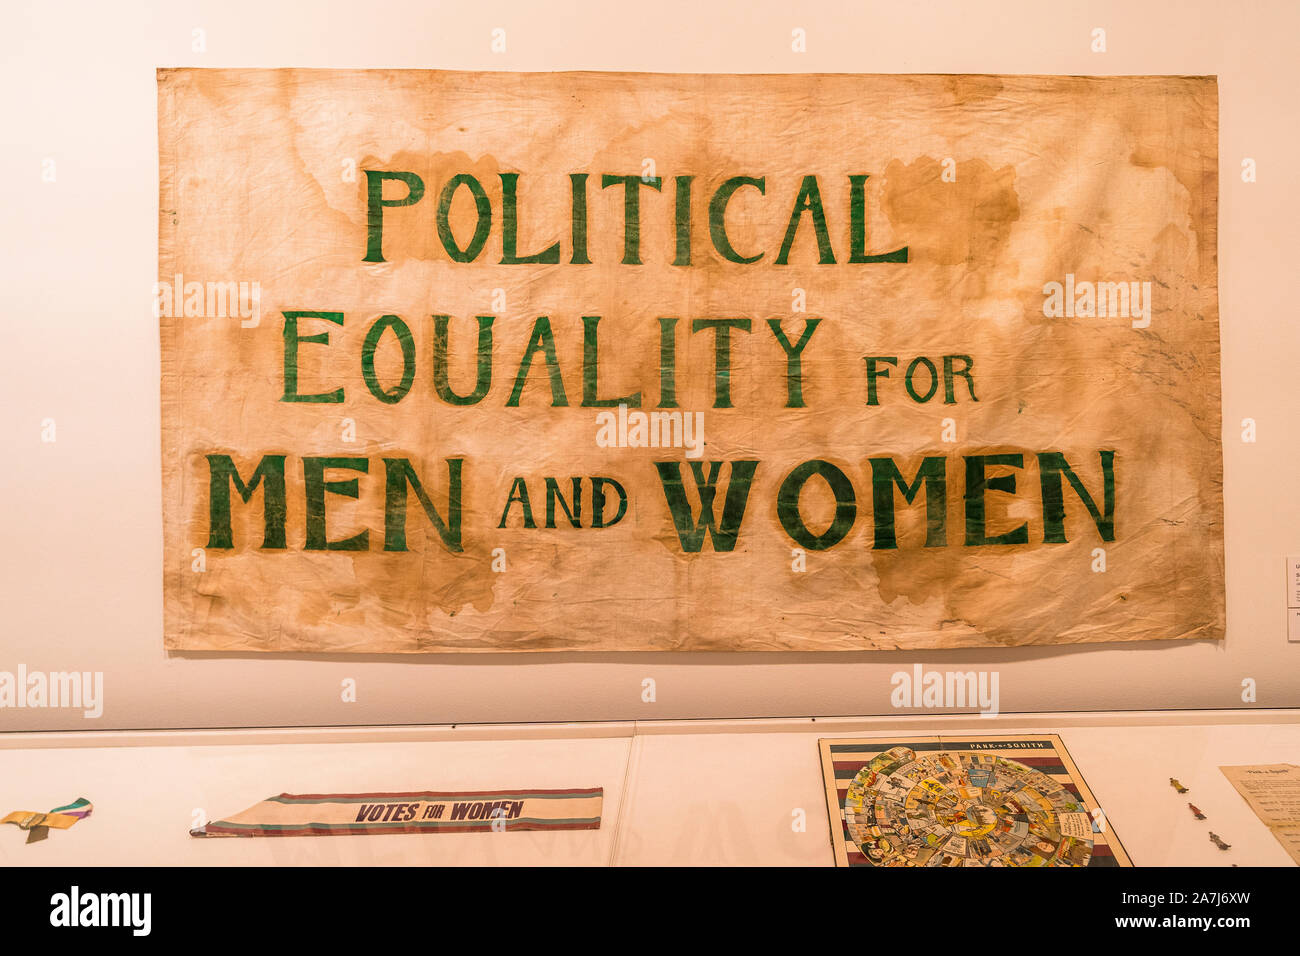 2 Nov 19. Melbourne, Victoria. Bannière suffrage, vers 1912, la peinture à l'huile sur toile conservée à la National Gallery of Victoria Banque D'Images